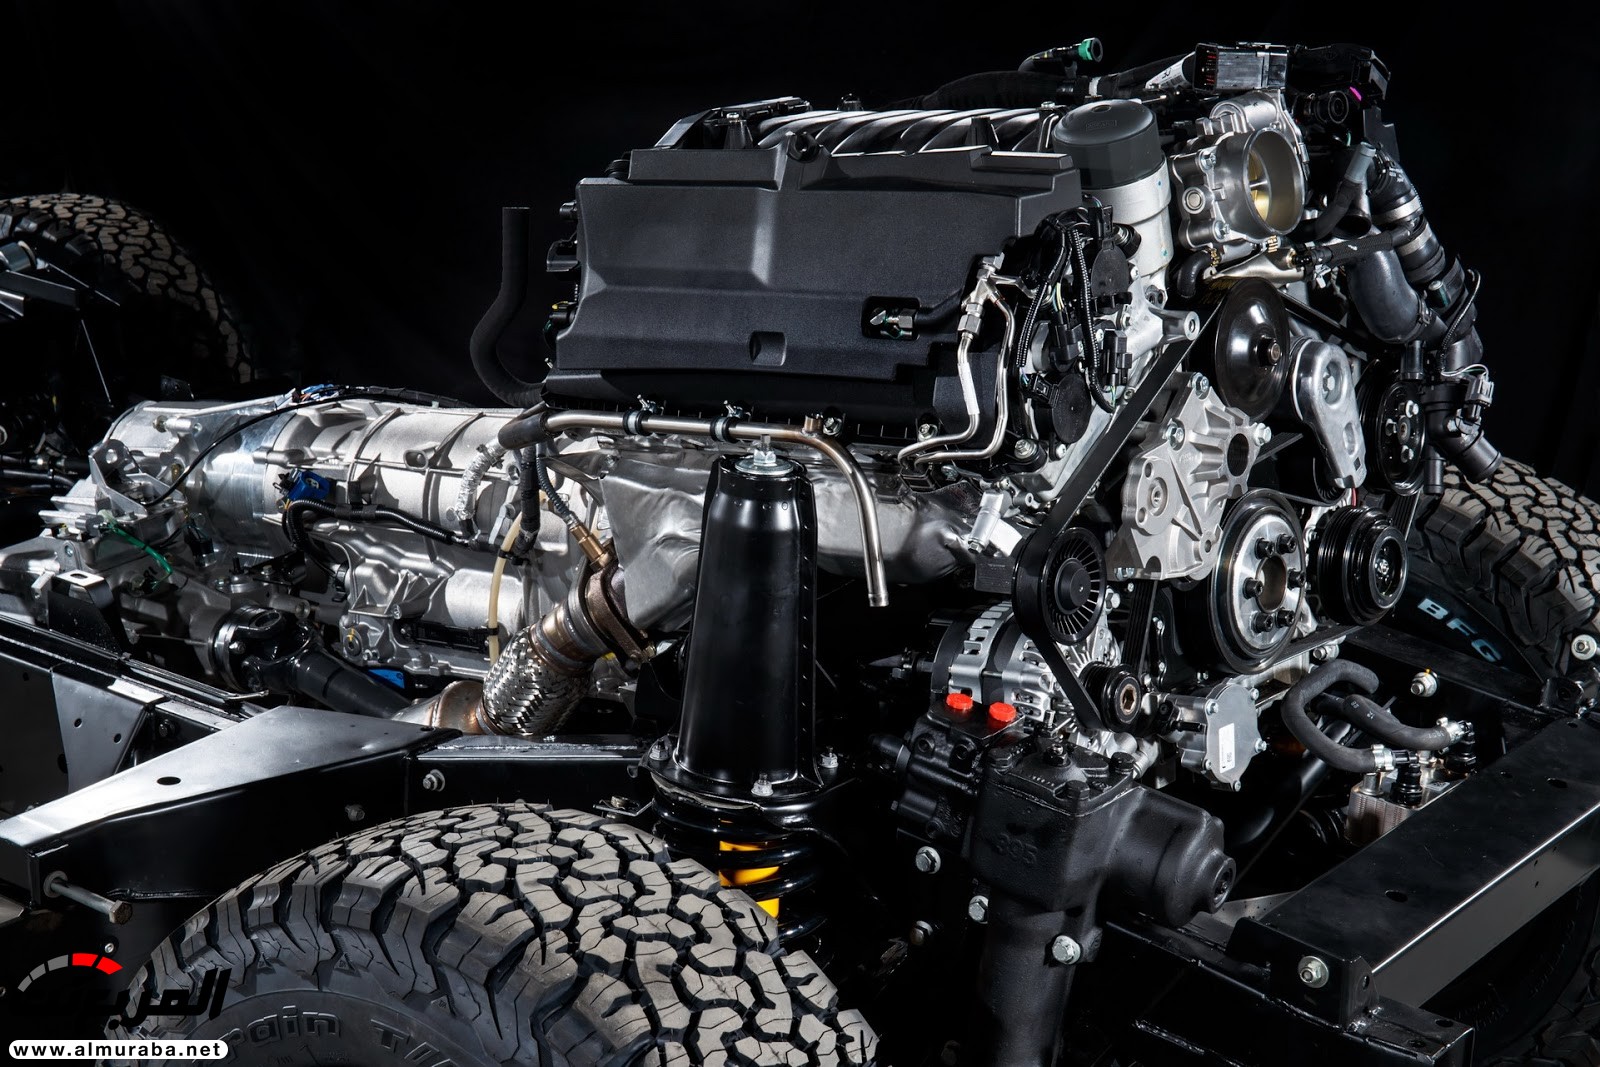 لاند روفر ديفندر تعود رسمياً بإصدار خاص بمحرك V8 بقوة 400 حصان 69